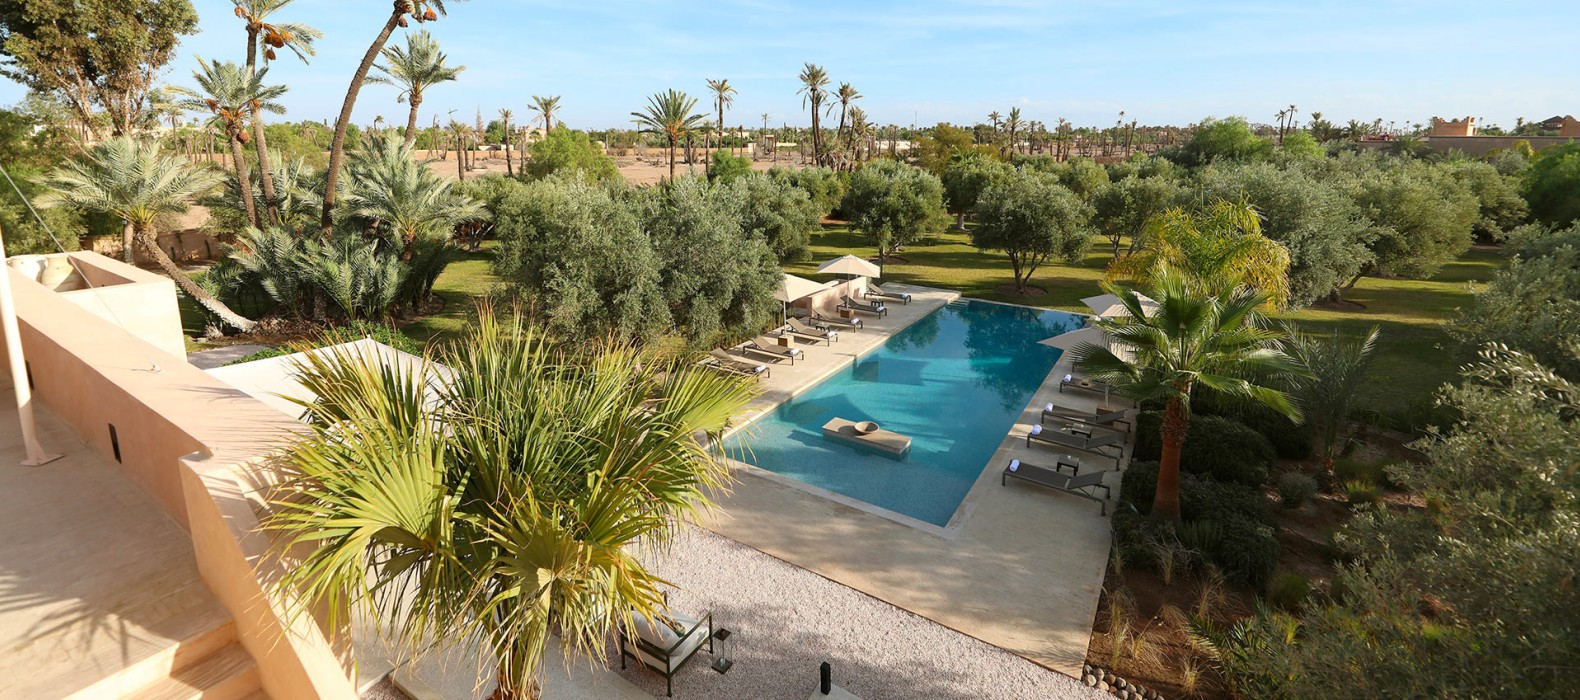 Landscape view of Villa Shakir in Marrakech